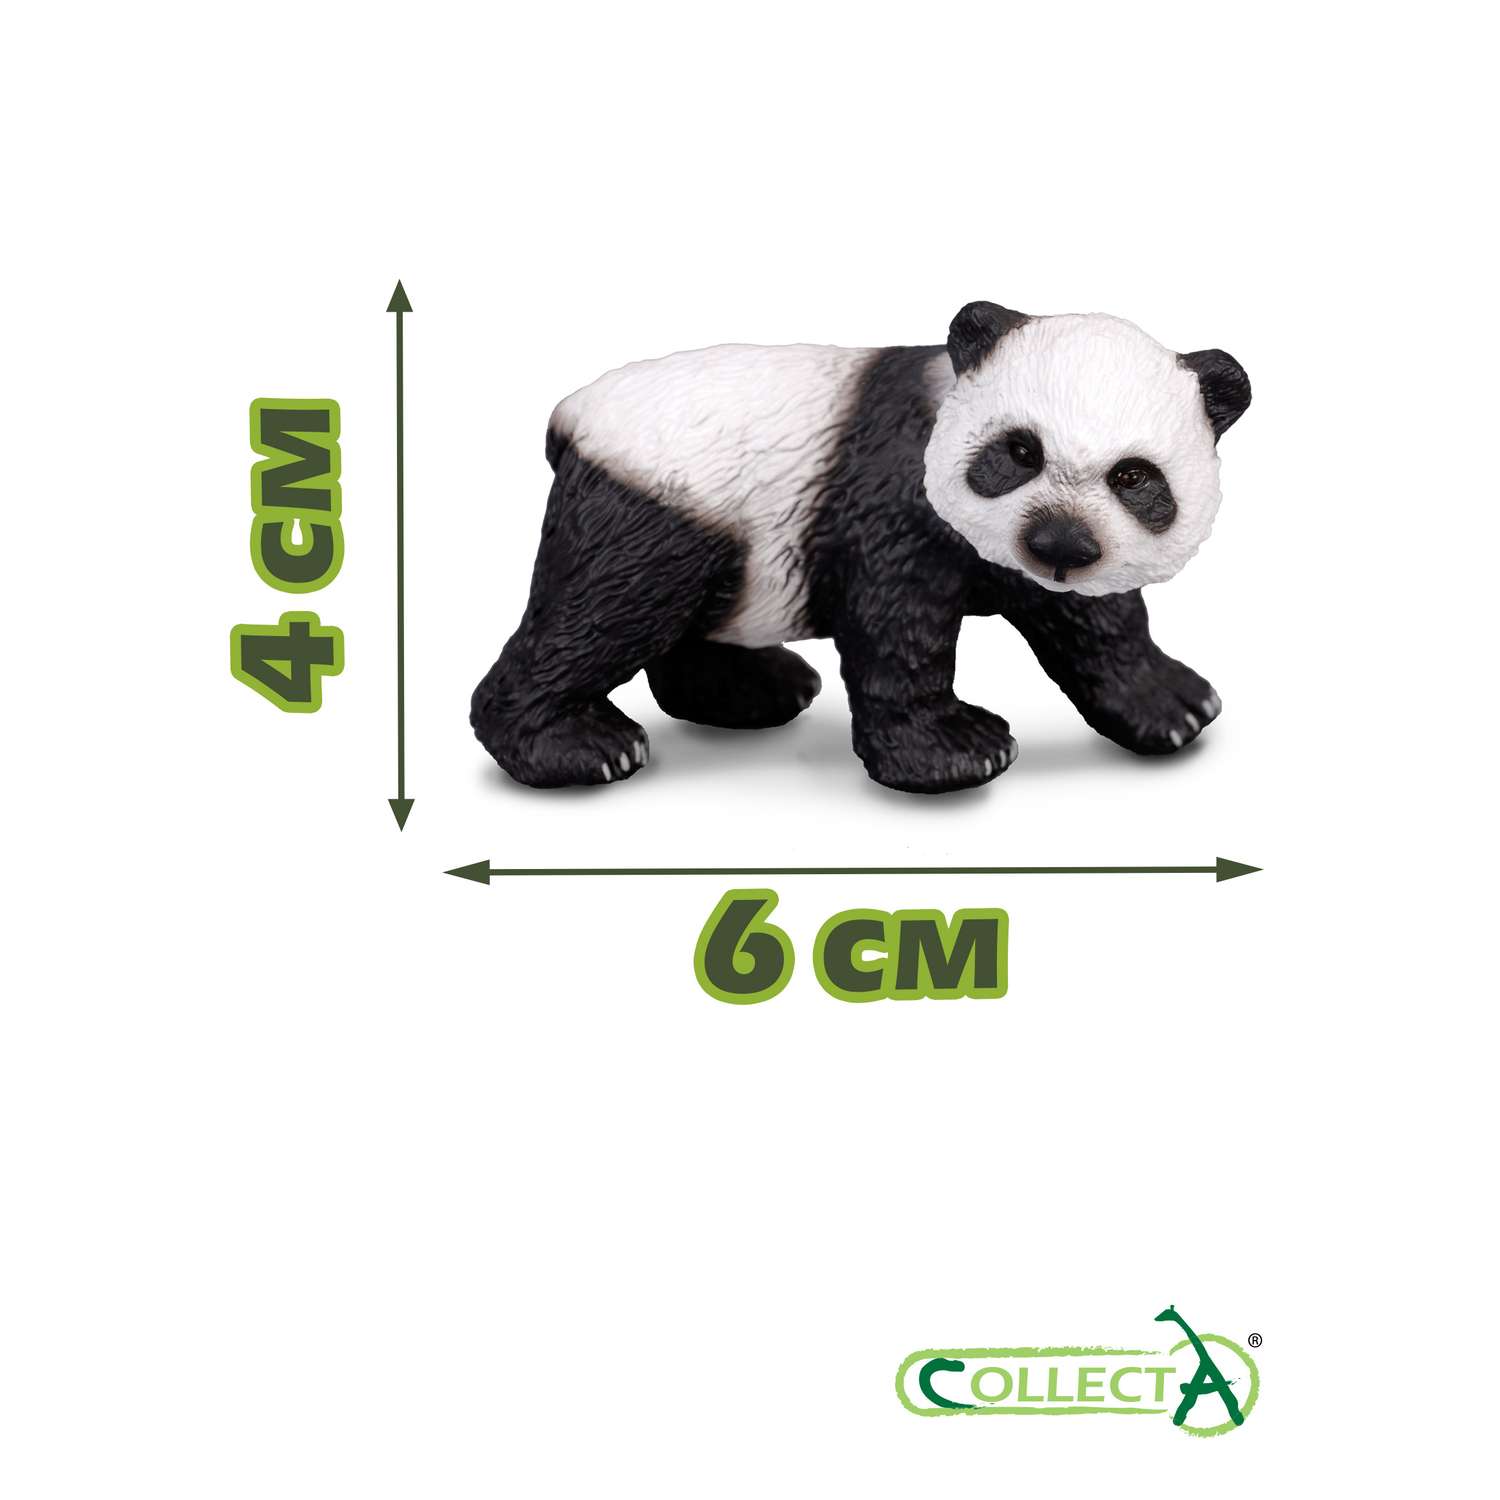 Фигурка животного Collecta Детеныш большой панды - фото 2